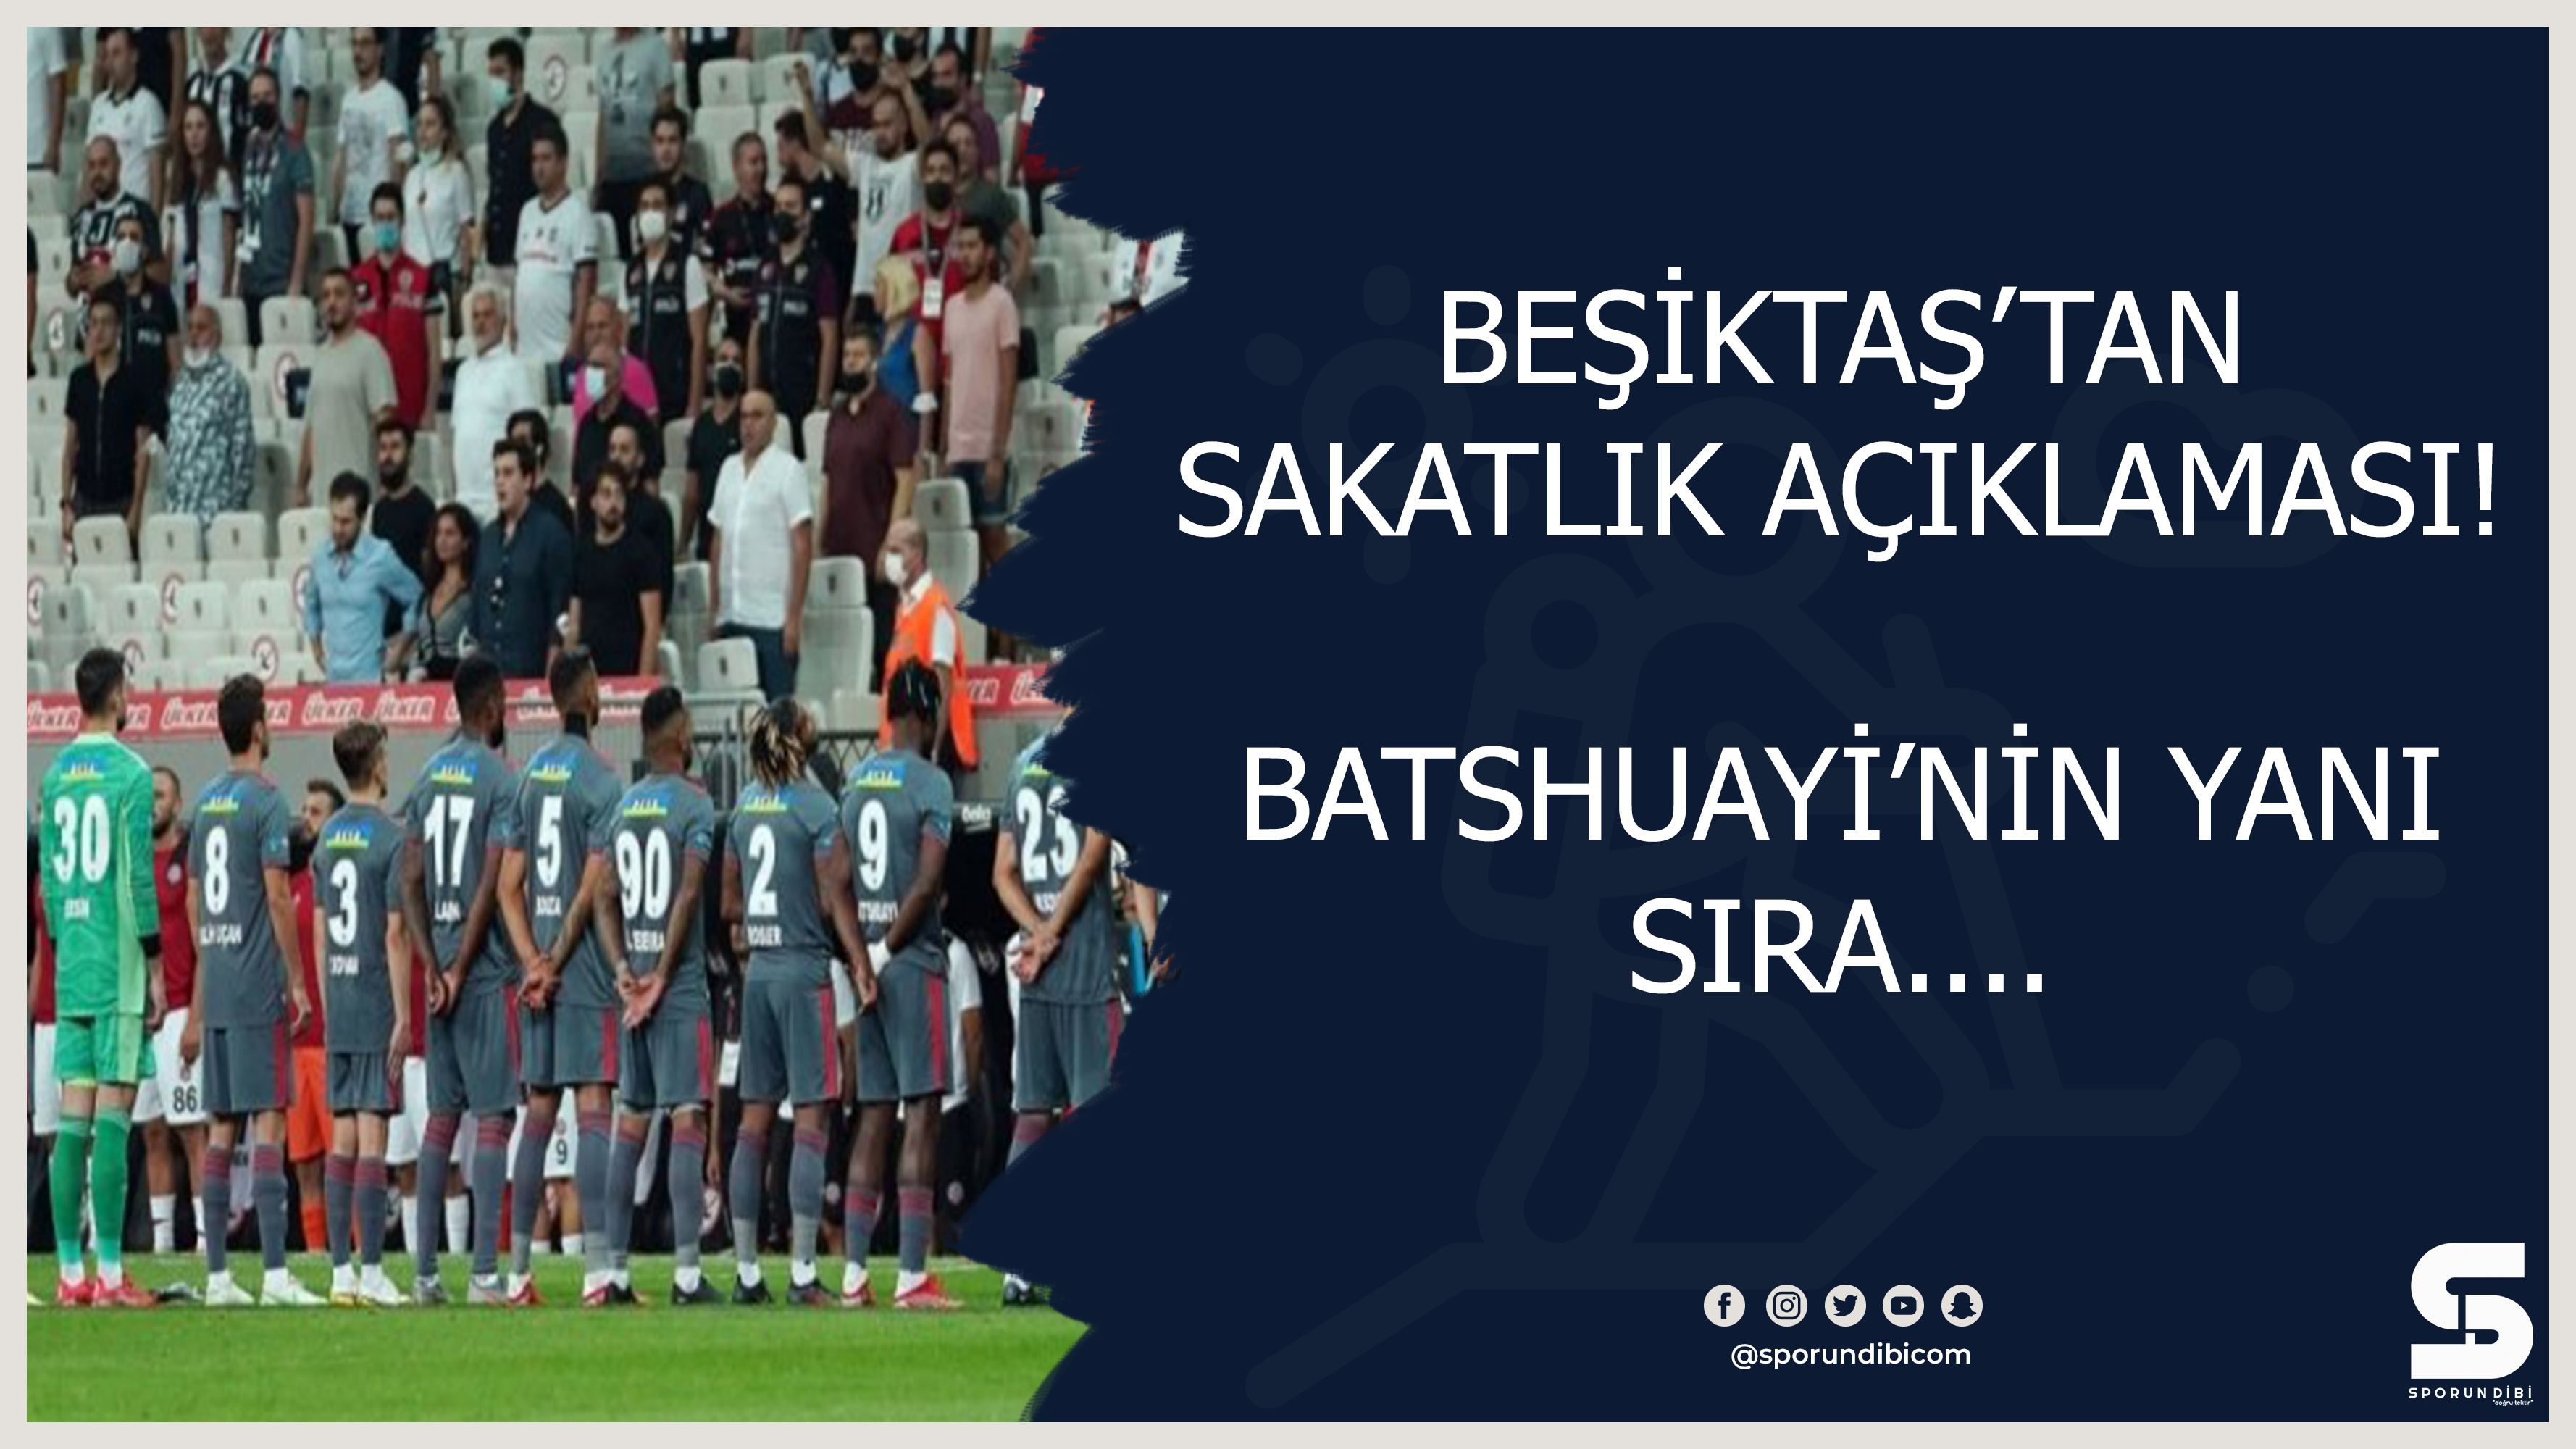 Beşiktaş'tan sakatlık açıklaması! Batshuayi'nin yanı sıra....